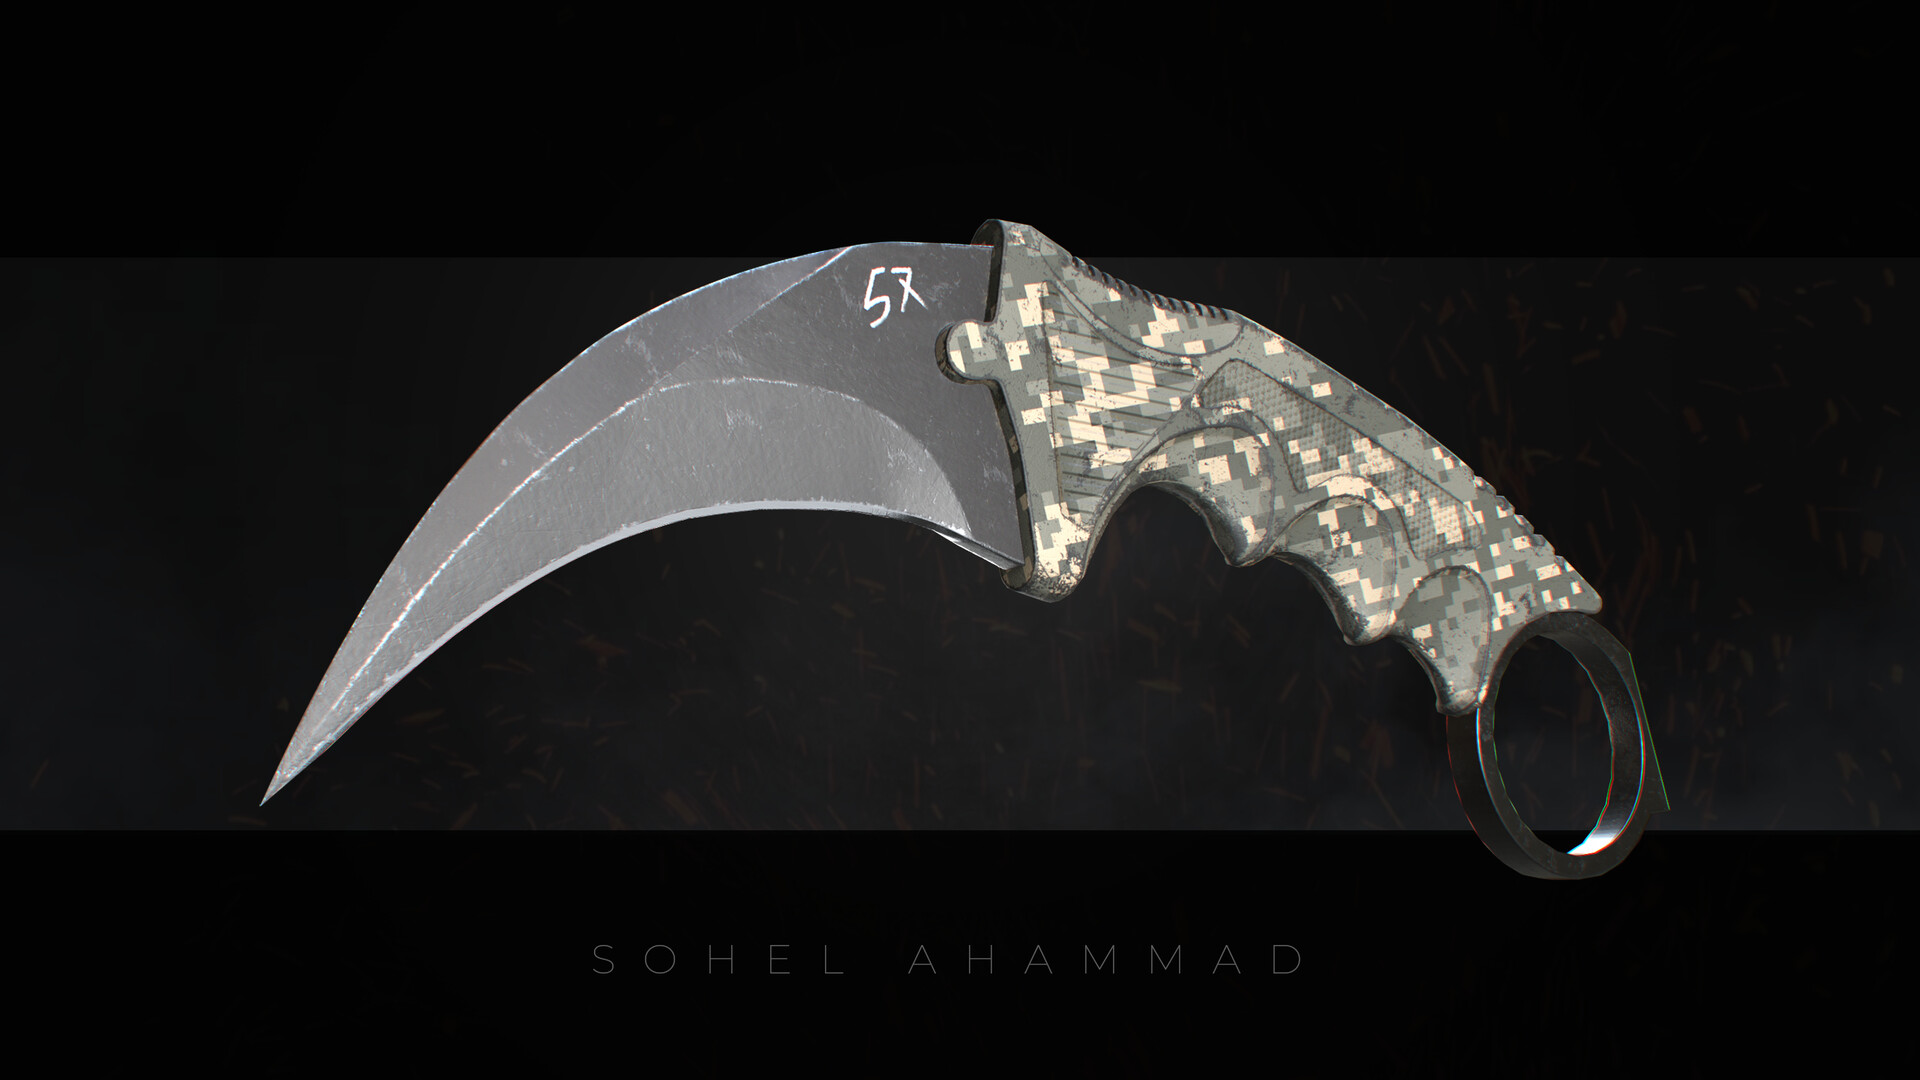 Mohammad Sohel Ahammad - Beretta 38a Sub Machine Gun